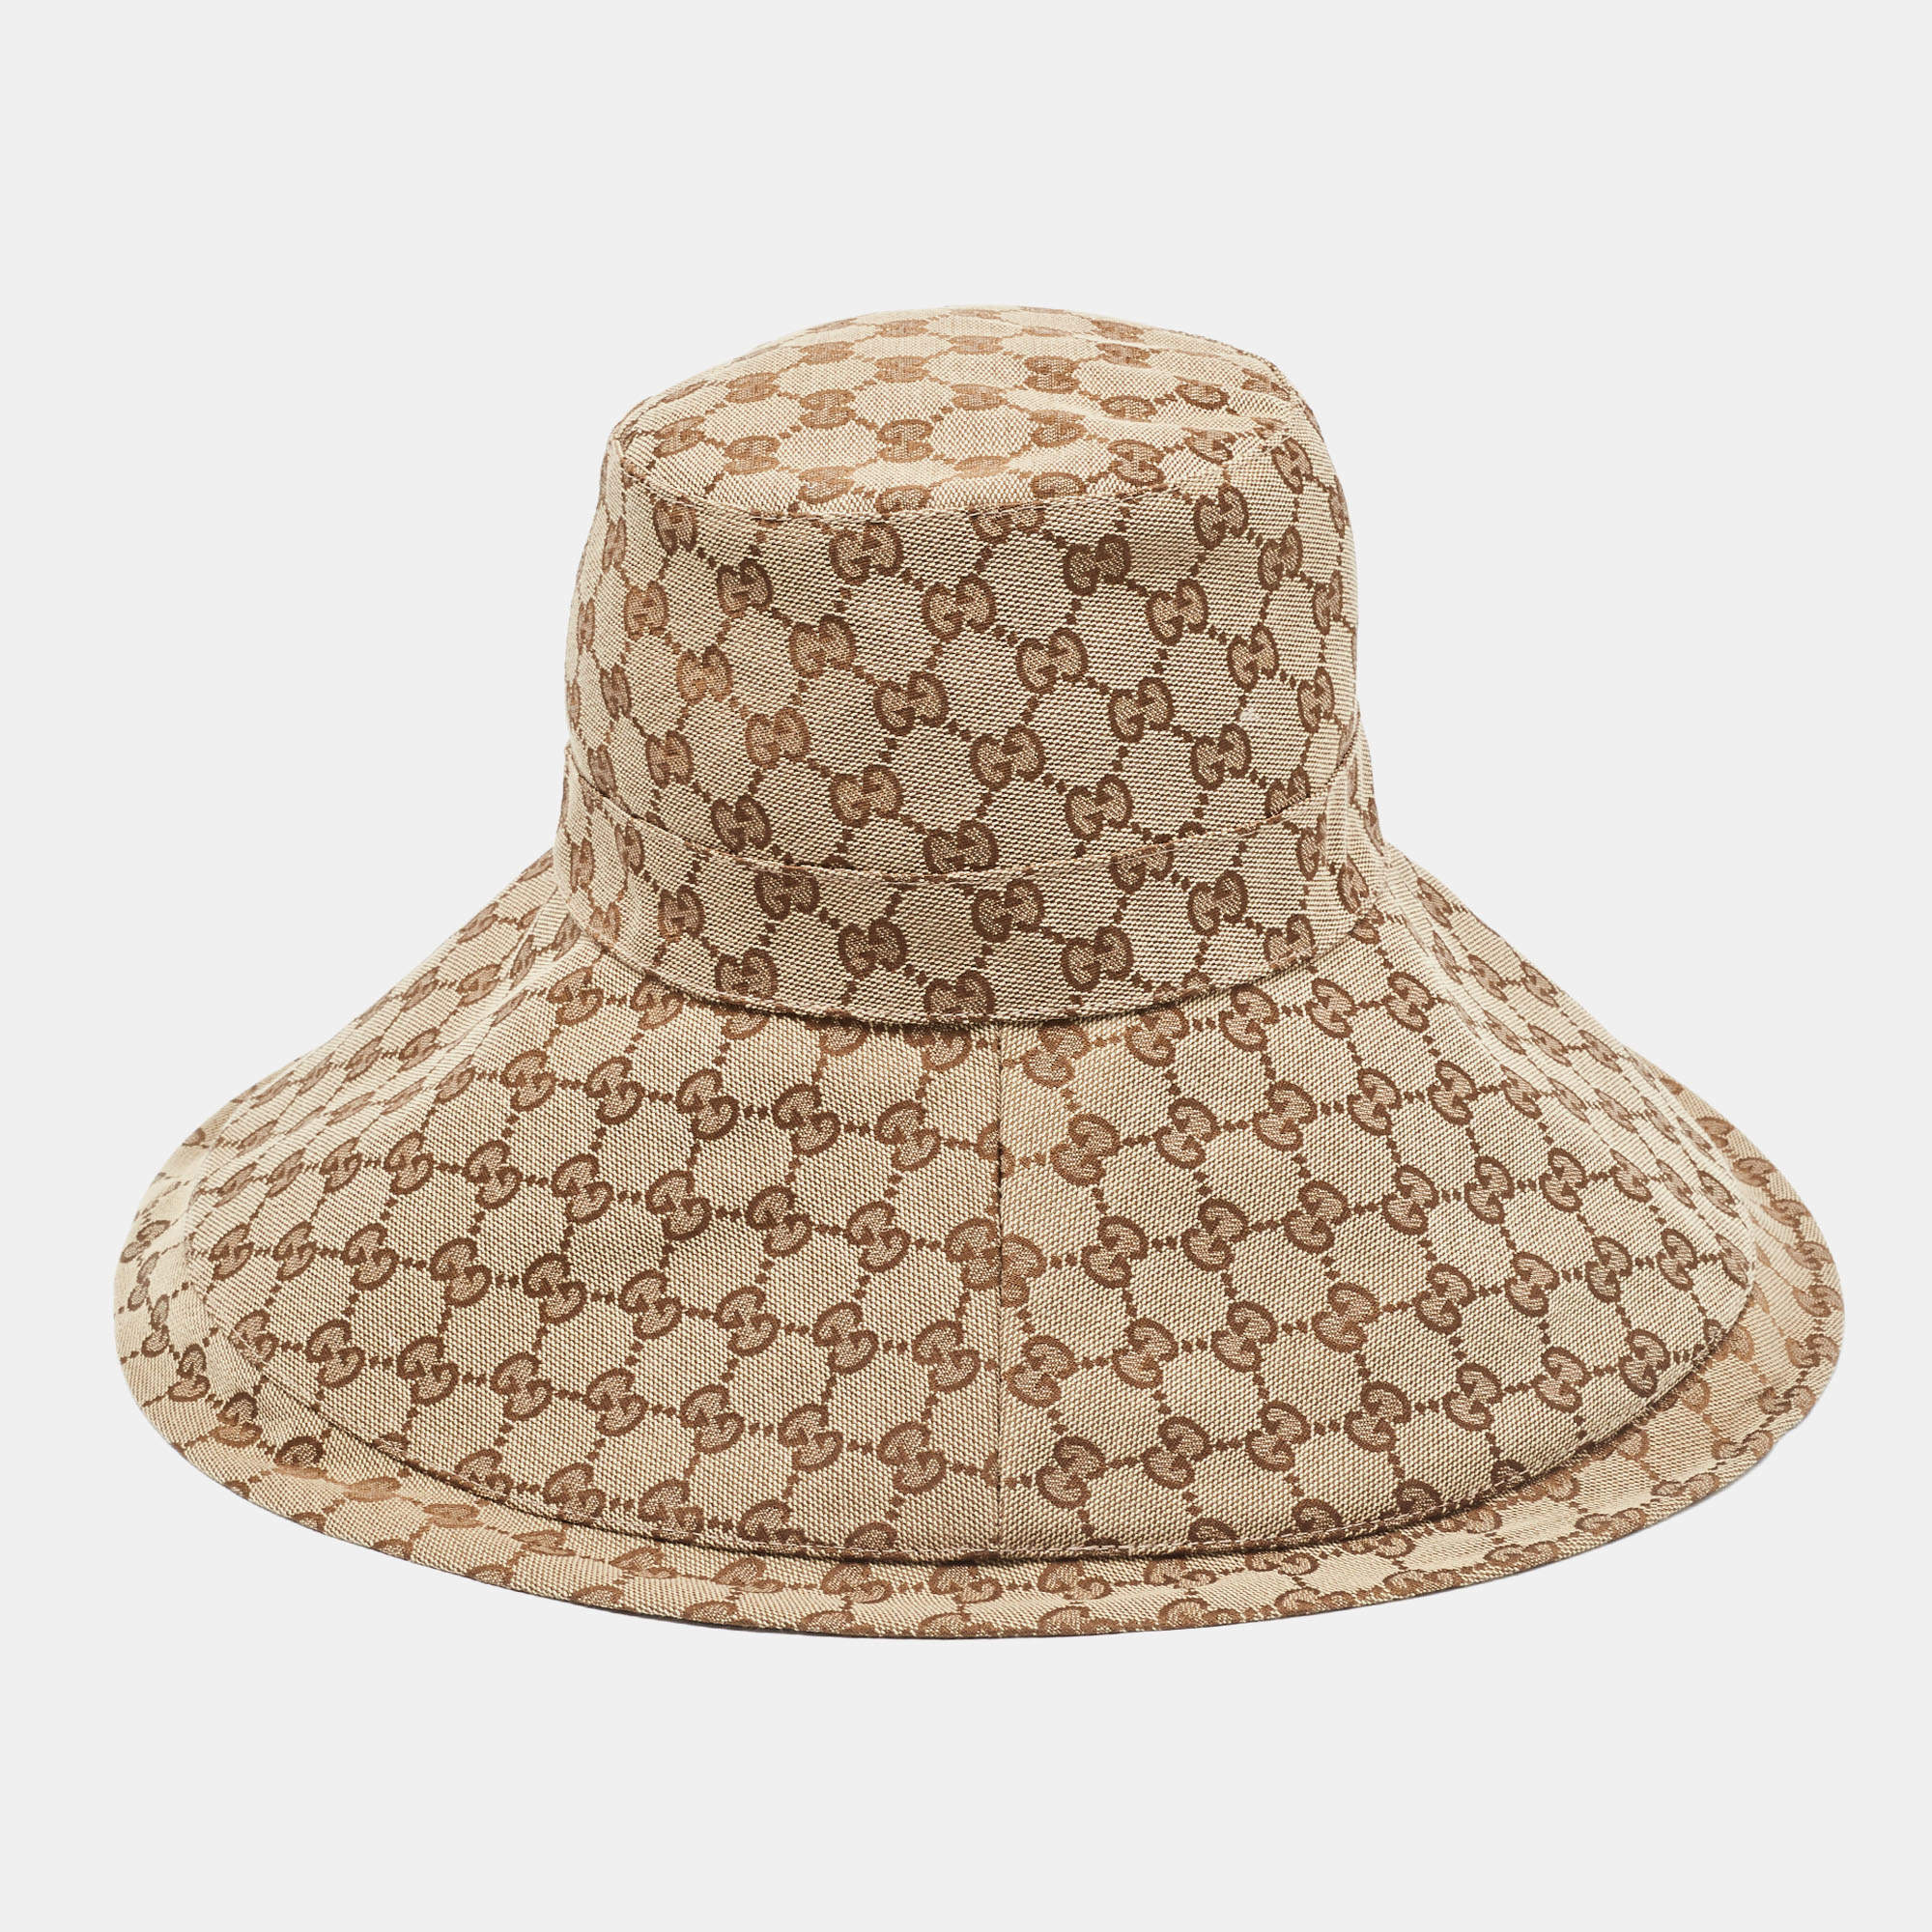 Gucci Bucket Hat GG Canvas Brown 1468941